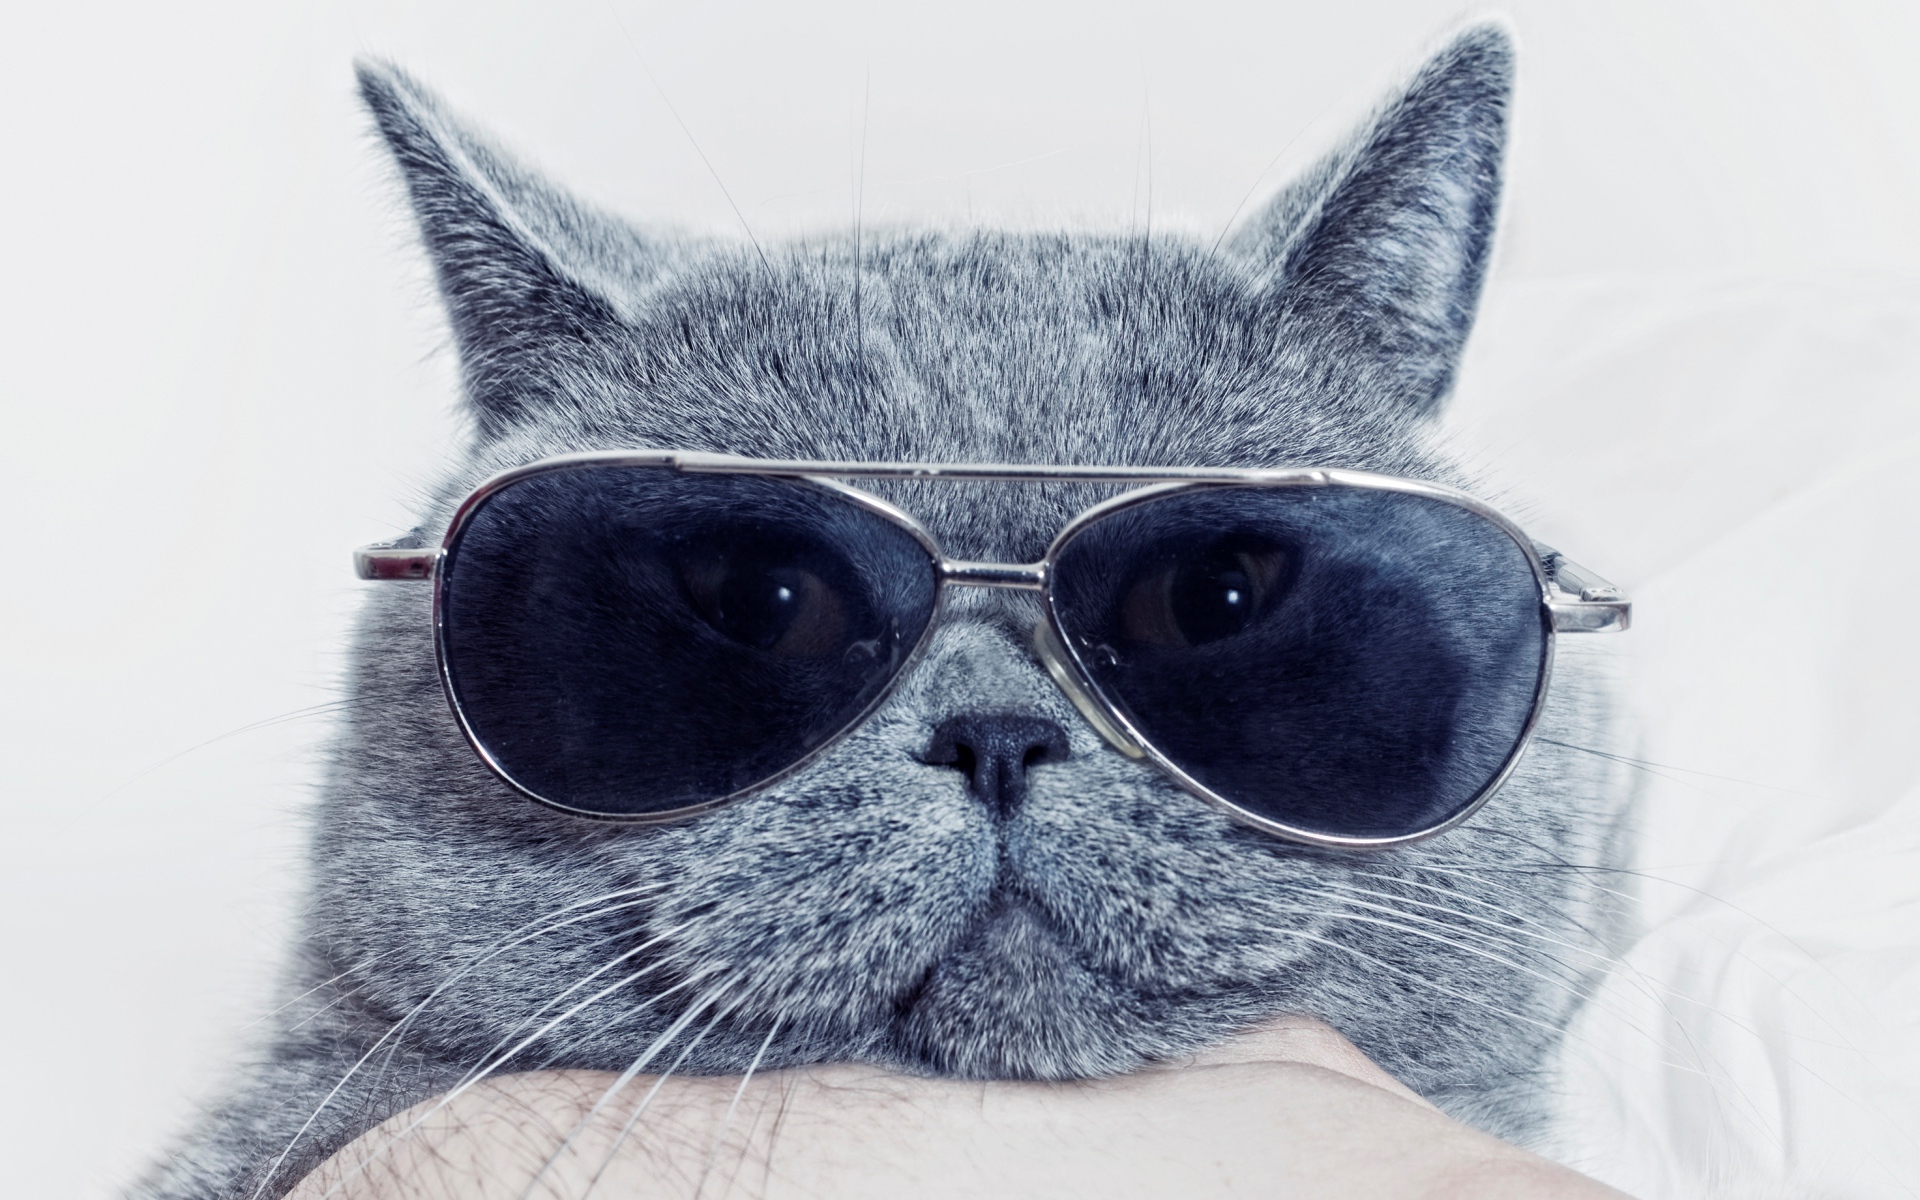 Британский кот в очках